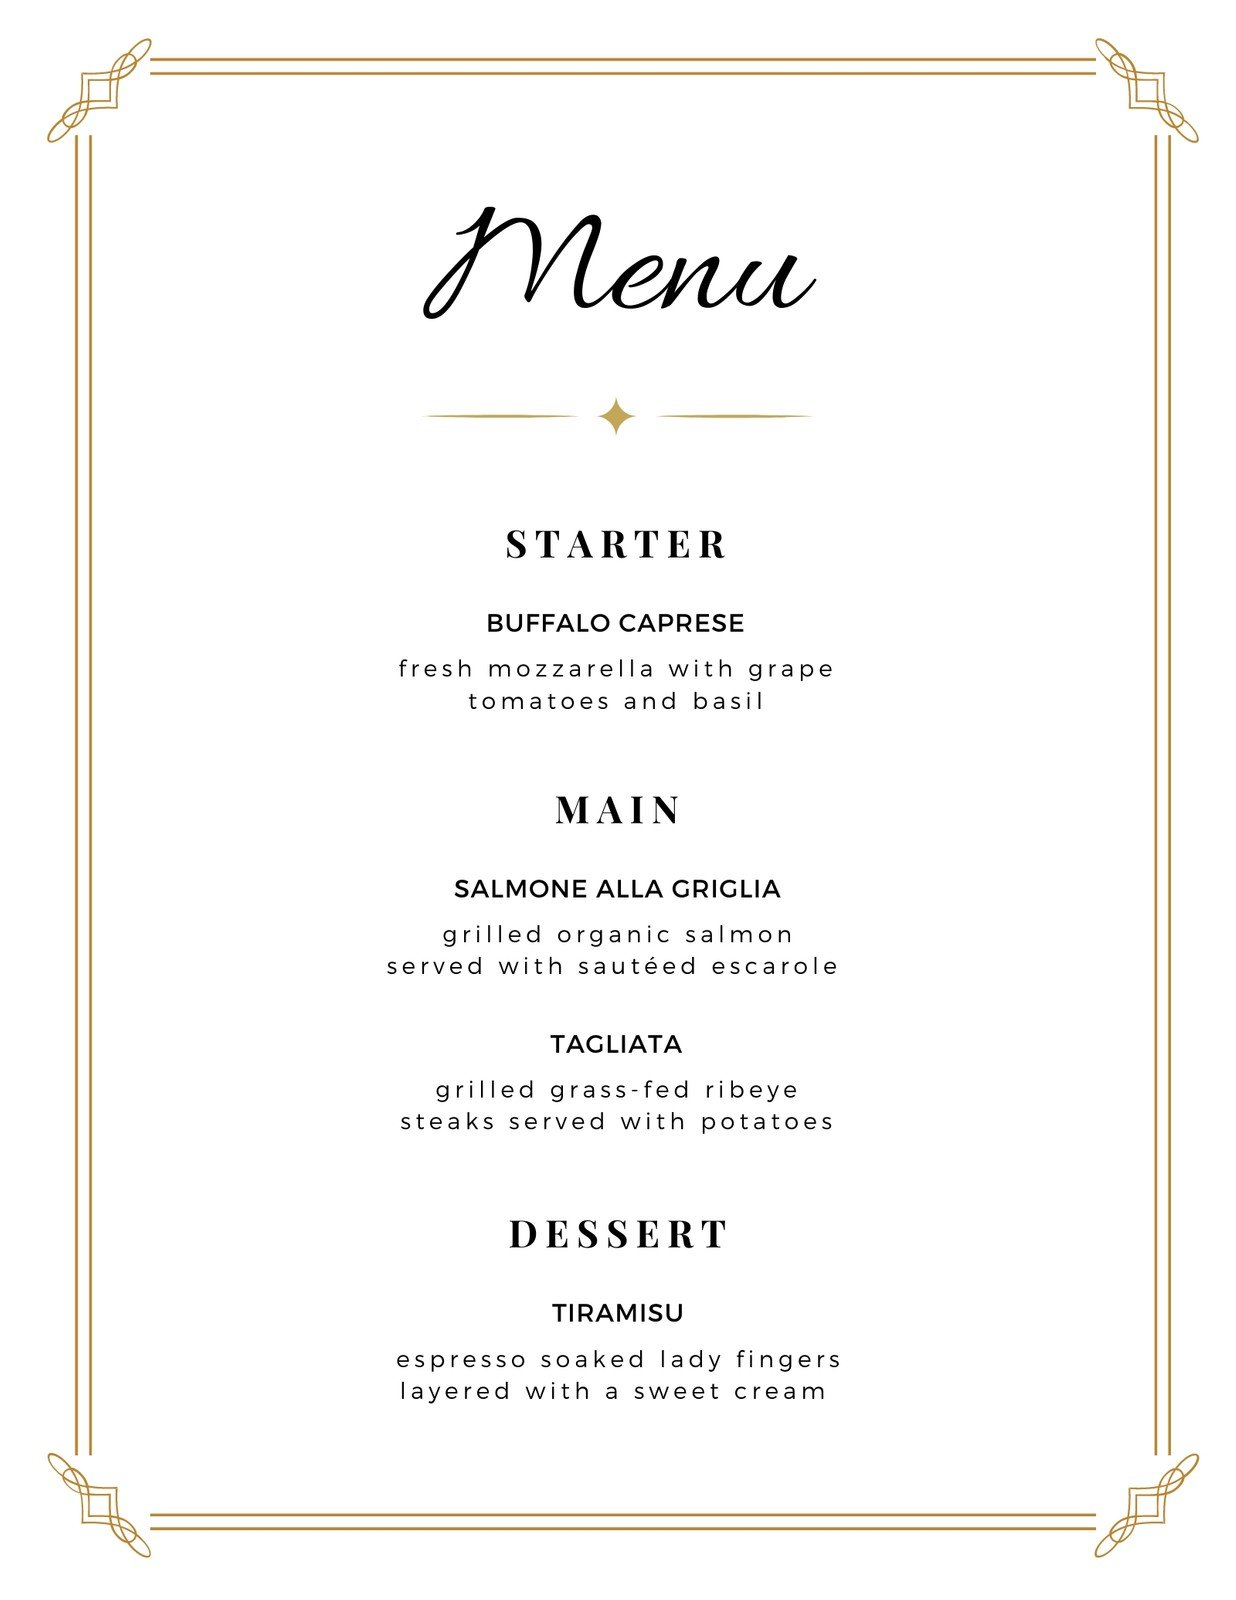 Free printable, customizable wedding menu templates  Canva Pertaining To Wedding Menu Templates Free Download